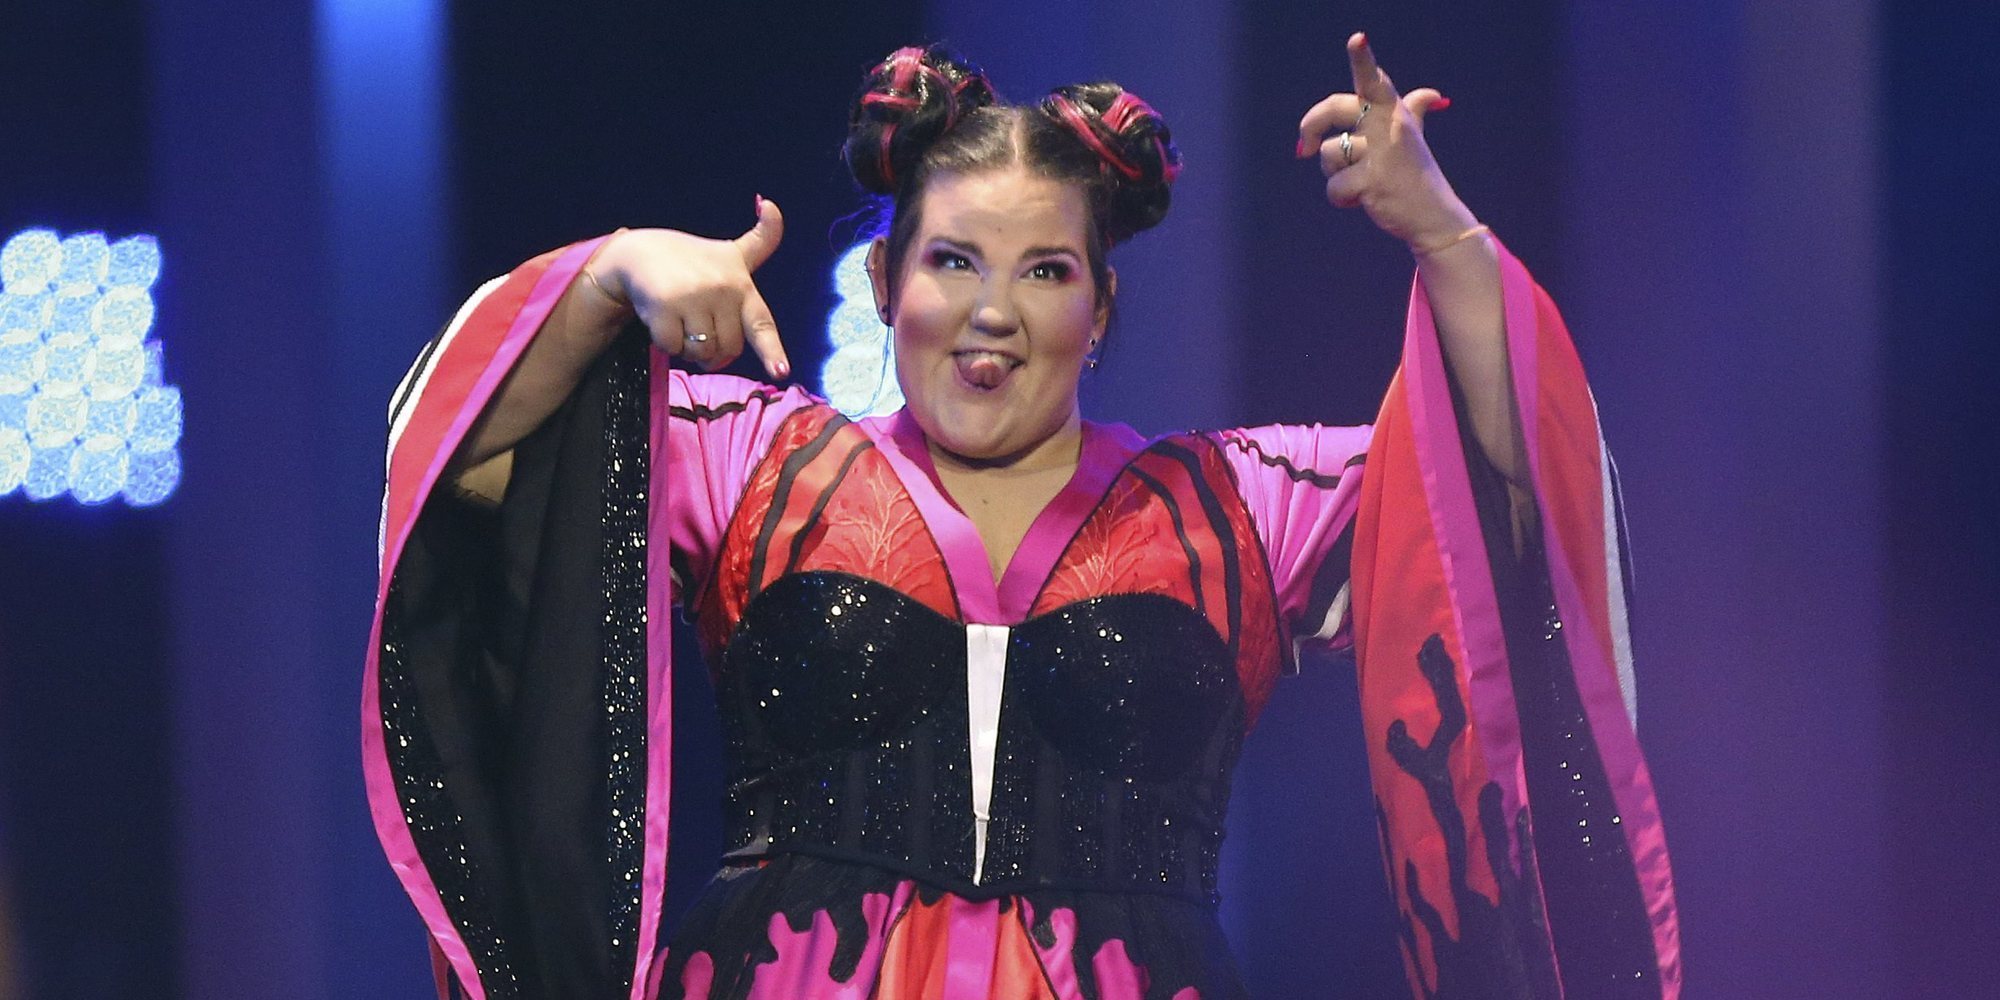 Todo lo que necesitas saber sobre Netta Barzilai, la ganadora de 'Eurovisión 2018'